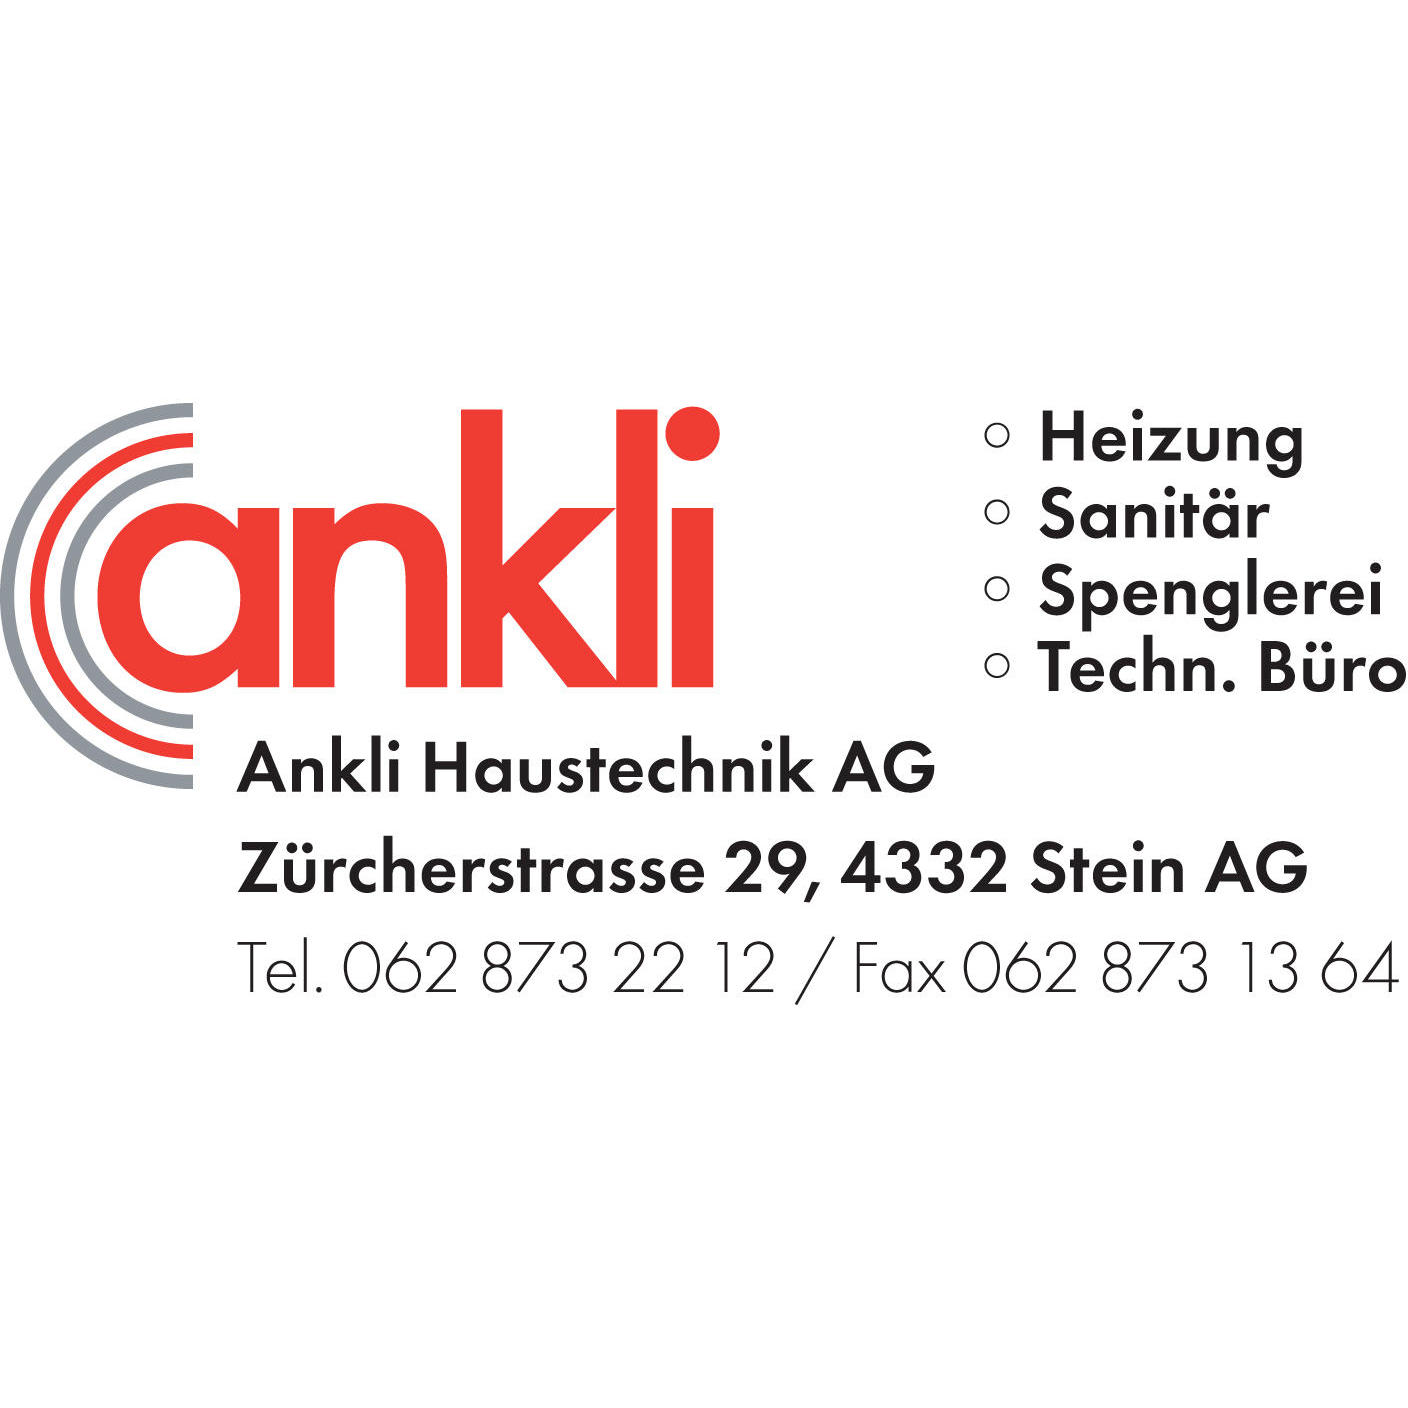 Ankli Haustechnik AG Logo